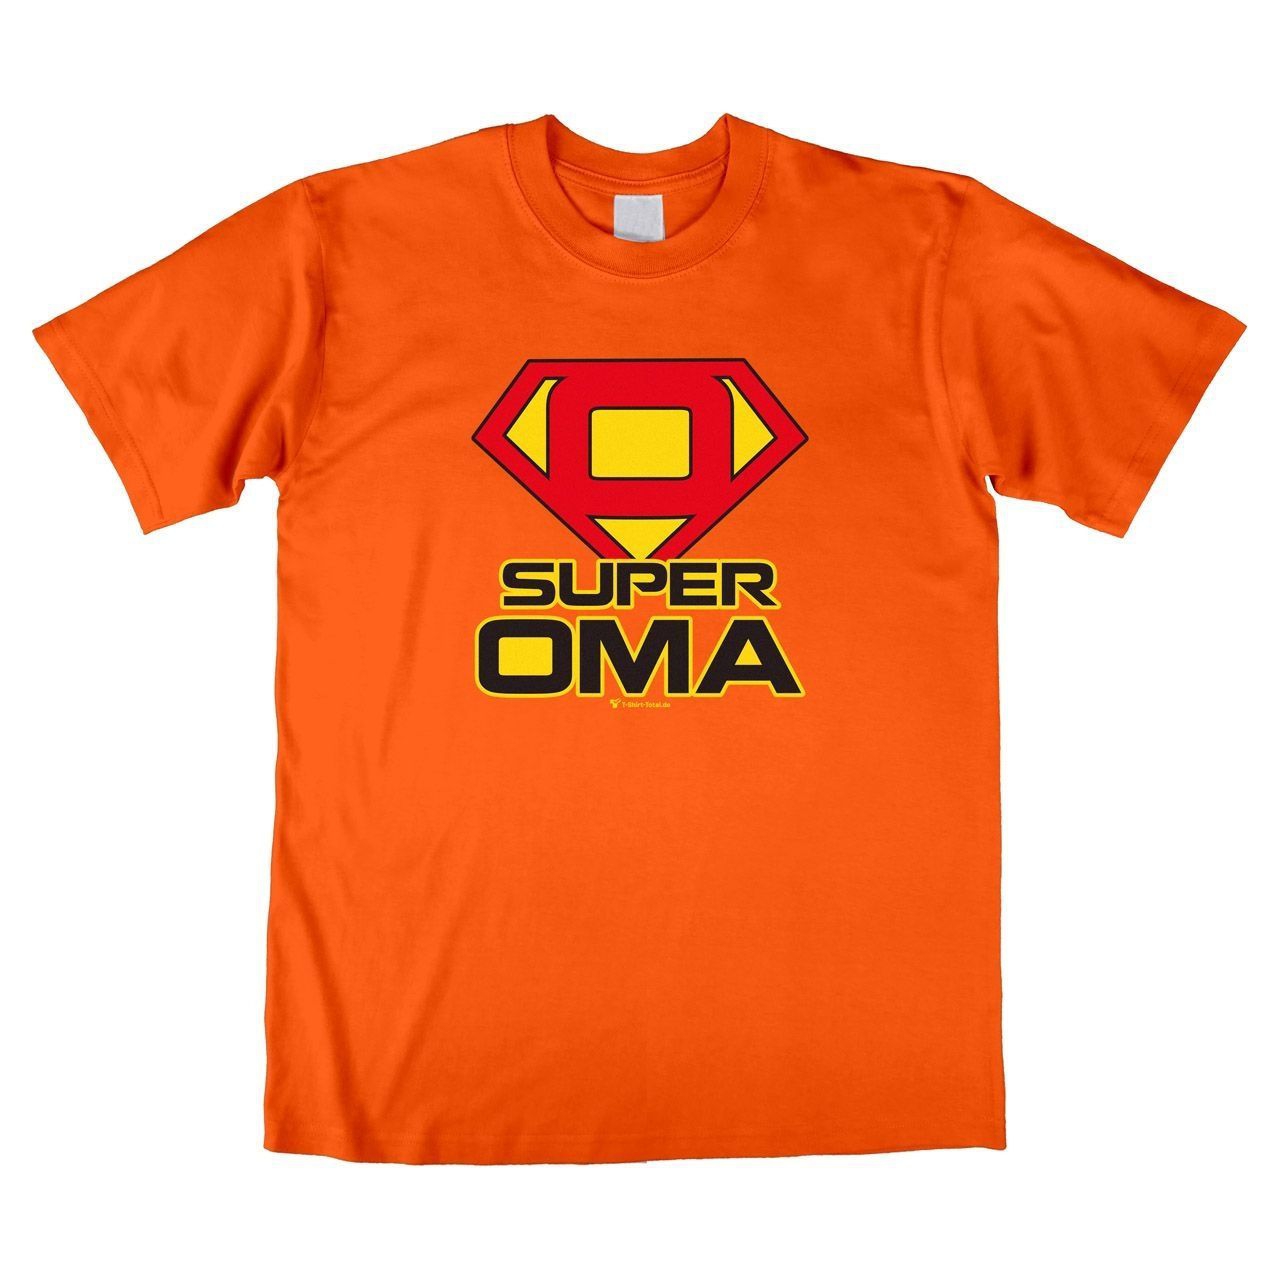 Super Oma Unisex T-Shirt orange Medium